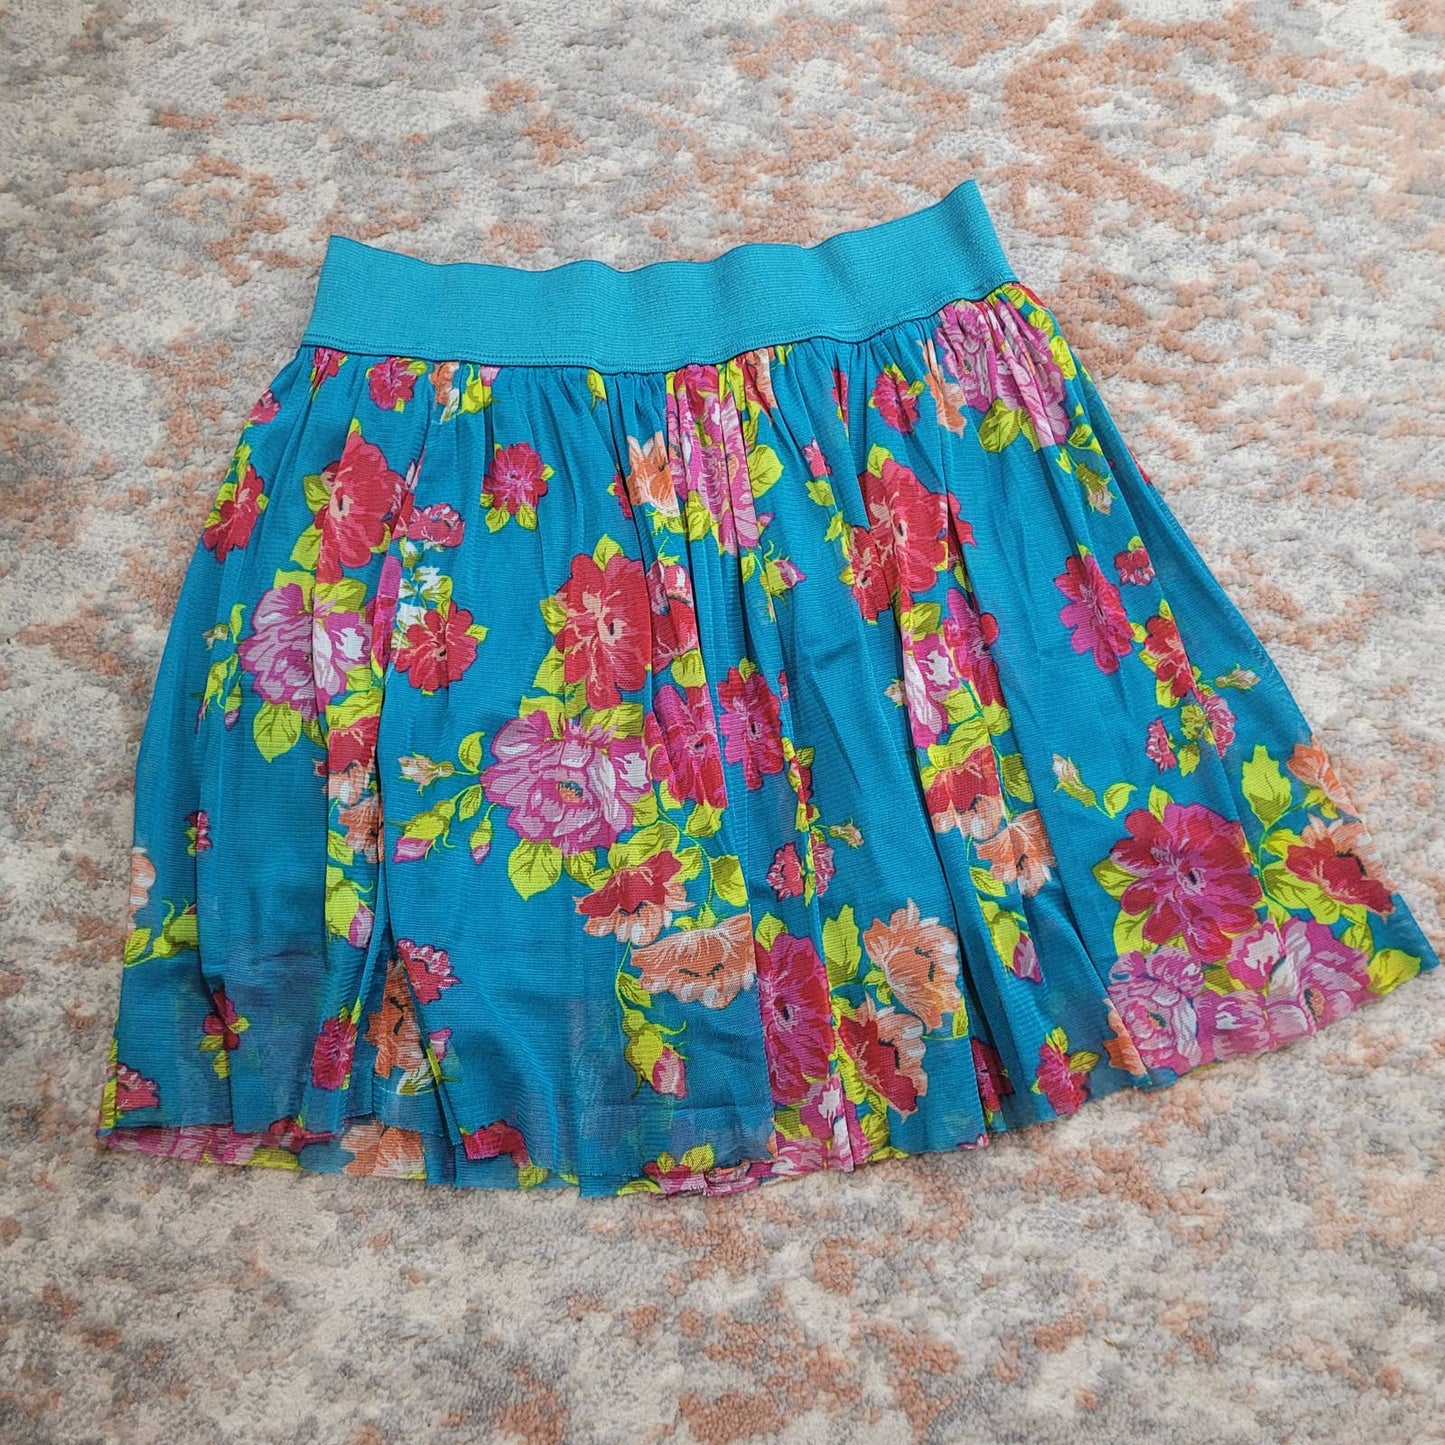 Adrene Blue Floral Skirt - Size Large